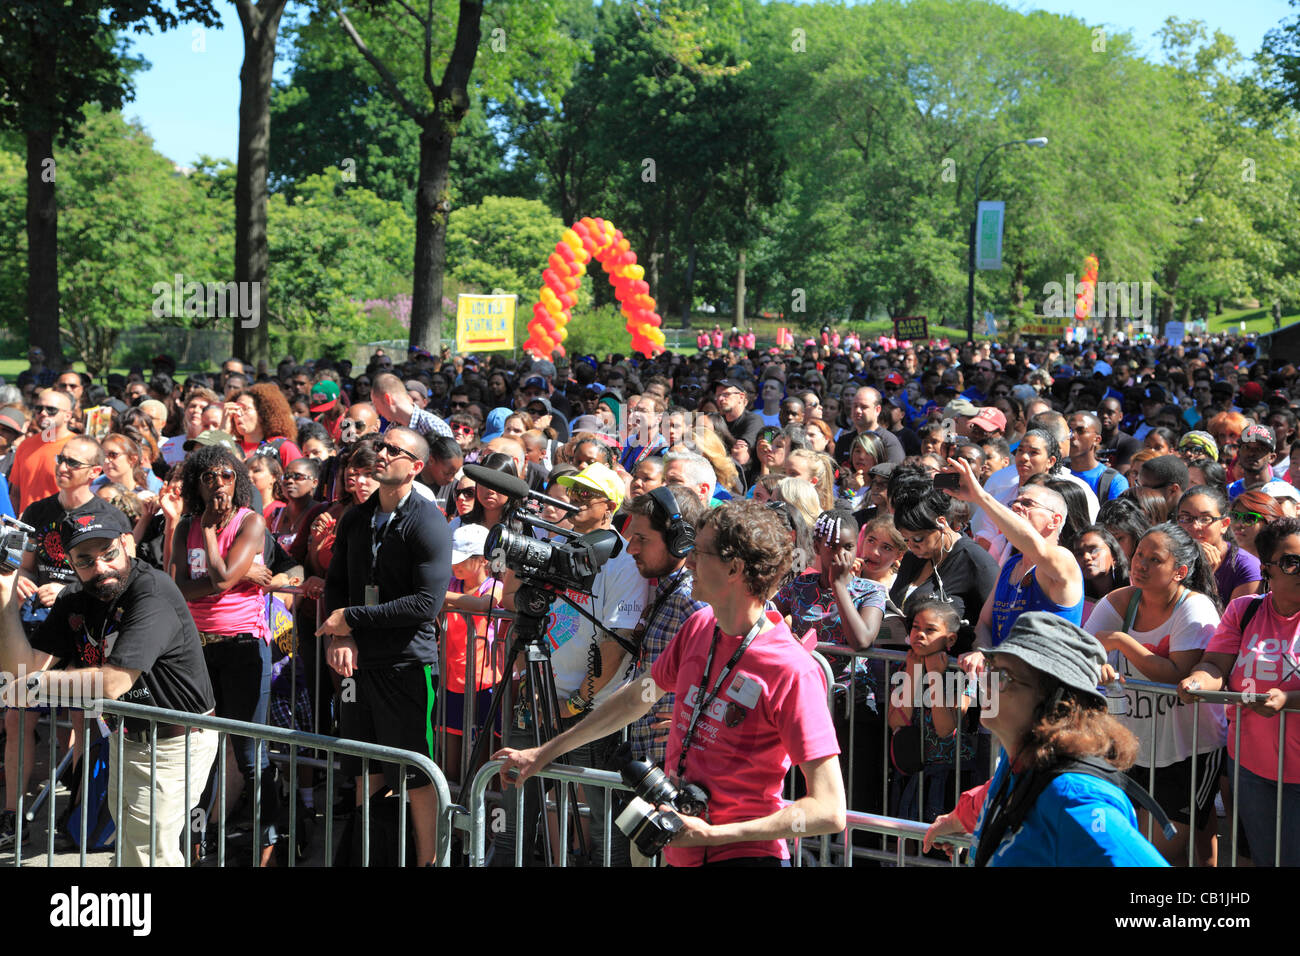 Ver las multitudes 27ª marcha anual contra el SIDA Nueva York, la más grande del mundo, el VIH/SIDA eventos de recaudación, Central Park, la ciudad de Nueva York, EE.UU. el domingo, 20 de mayo de 2012. Foto de stock